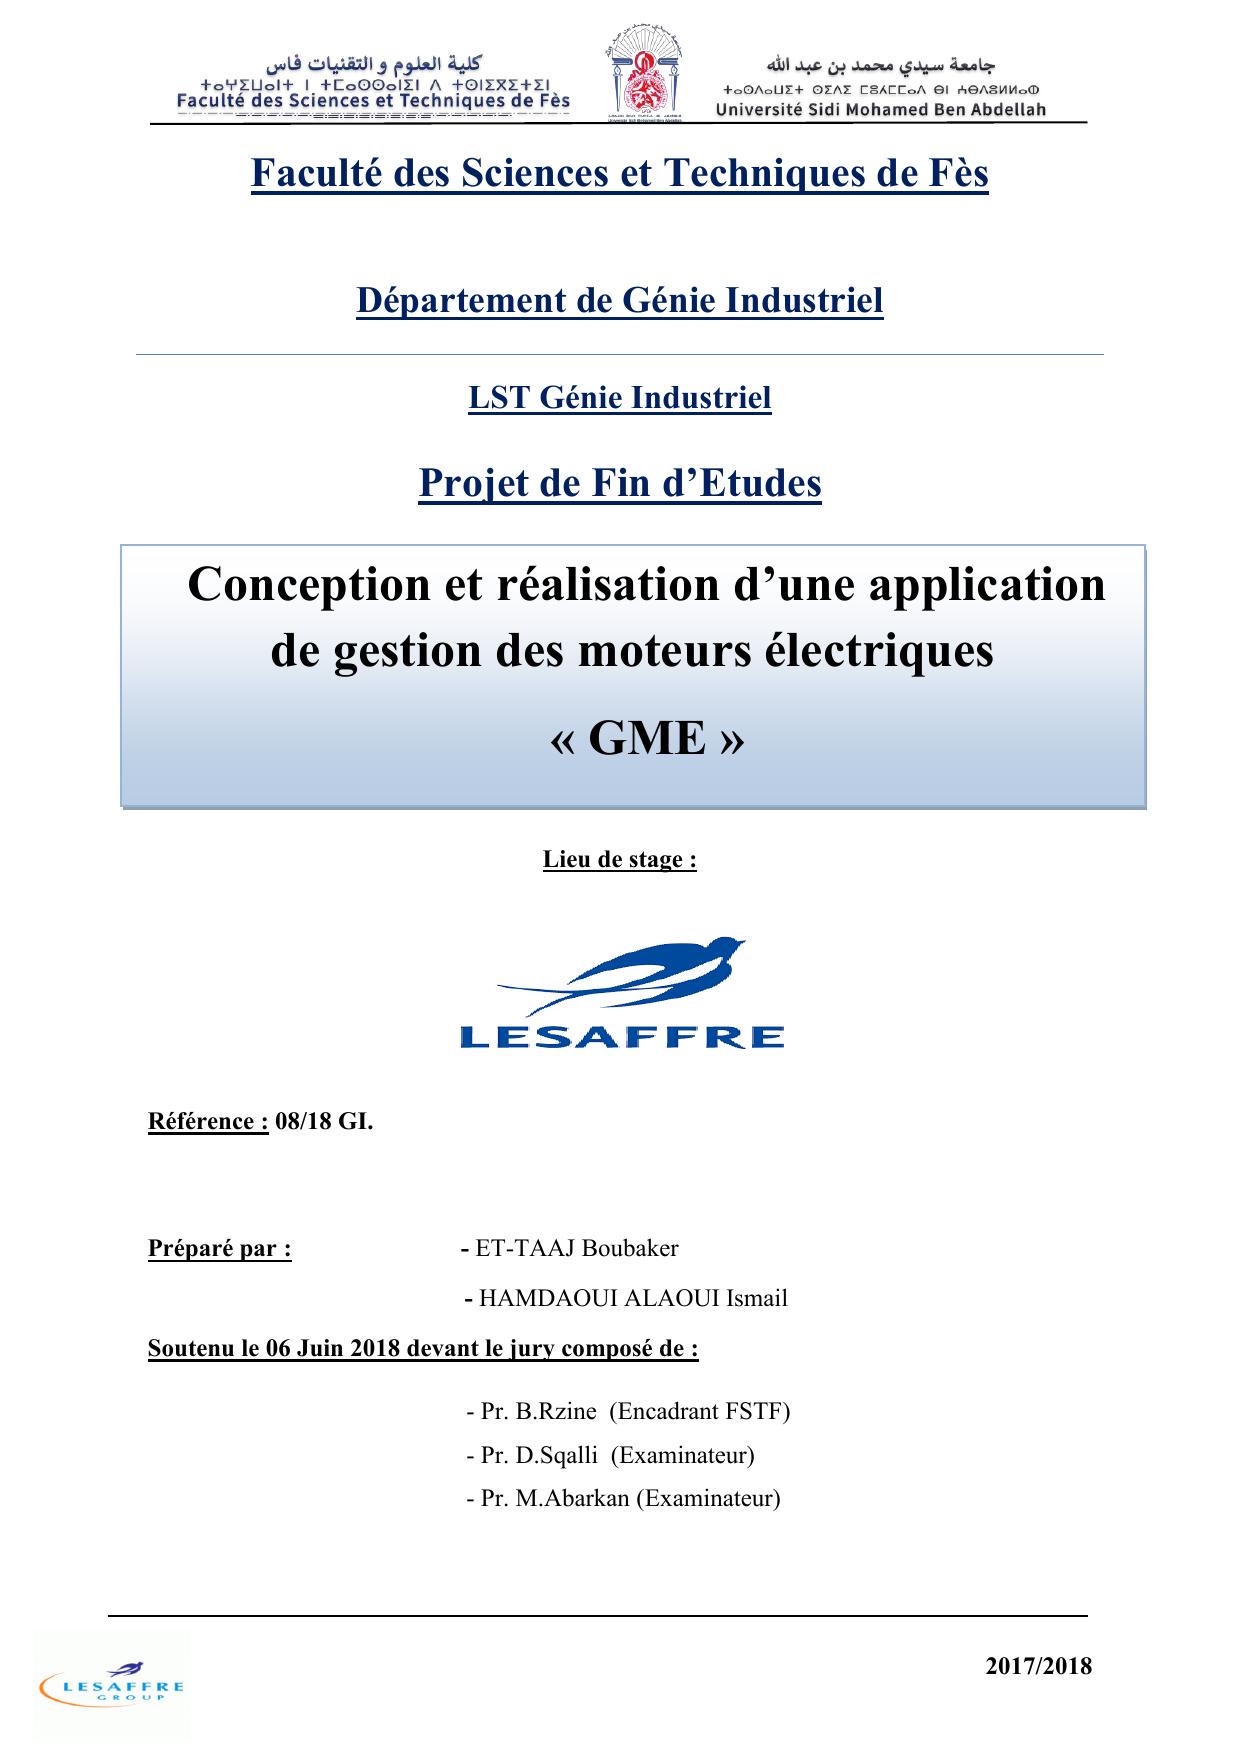 Conception et réalisation d’une application de gestion des moteurs électriques « GME »